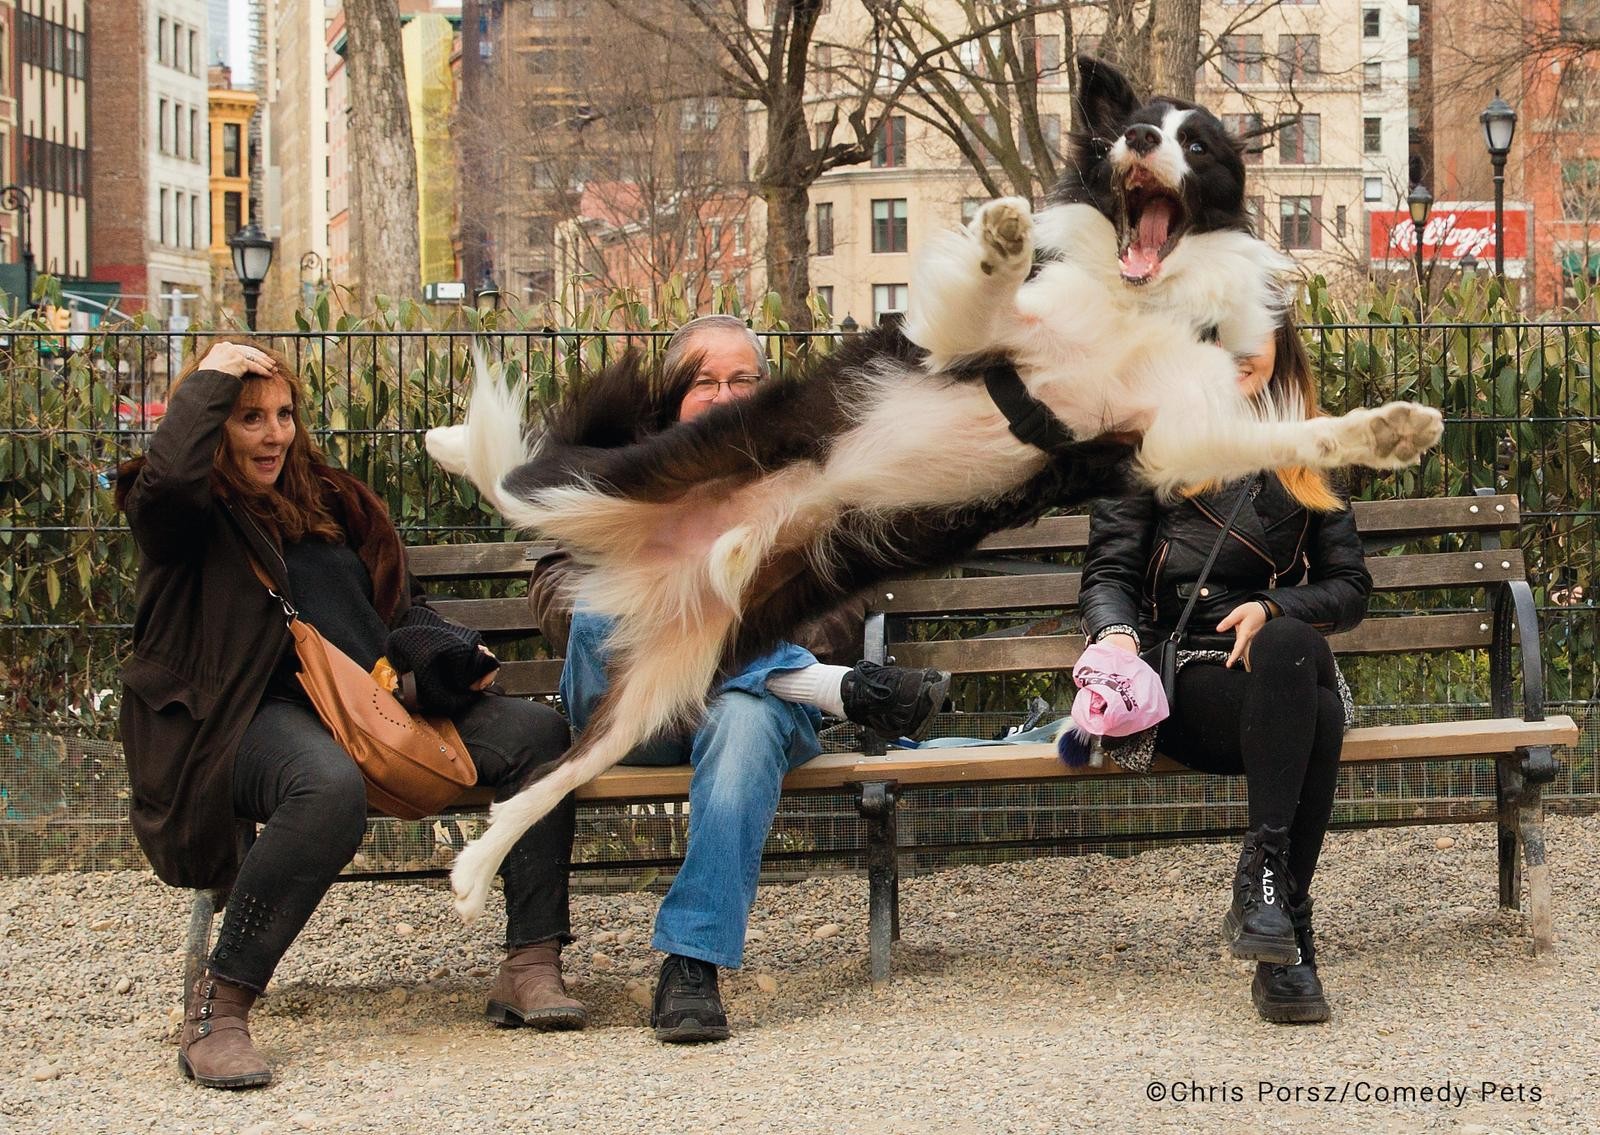 Cão salta e late ao mesmo tempo — Foto: Comedy Pet Photo Awards/Chris Porsz